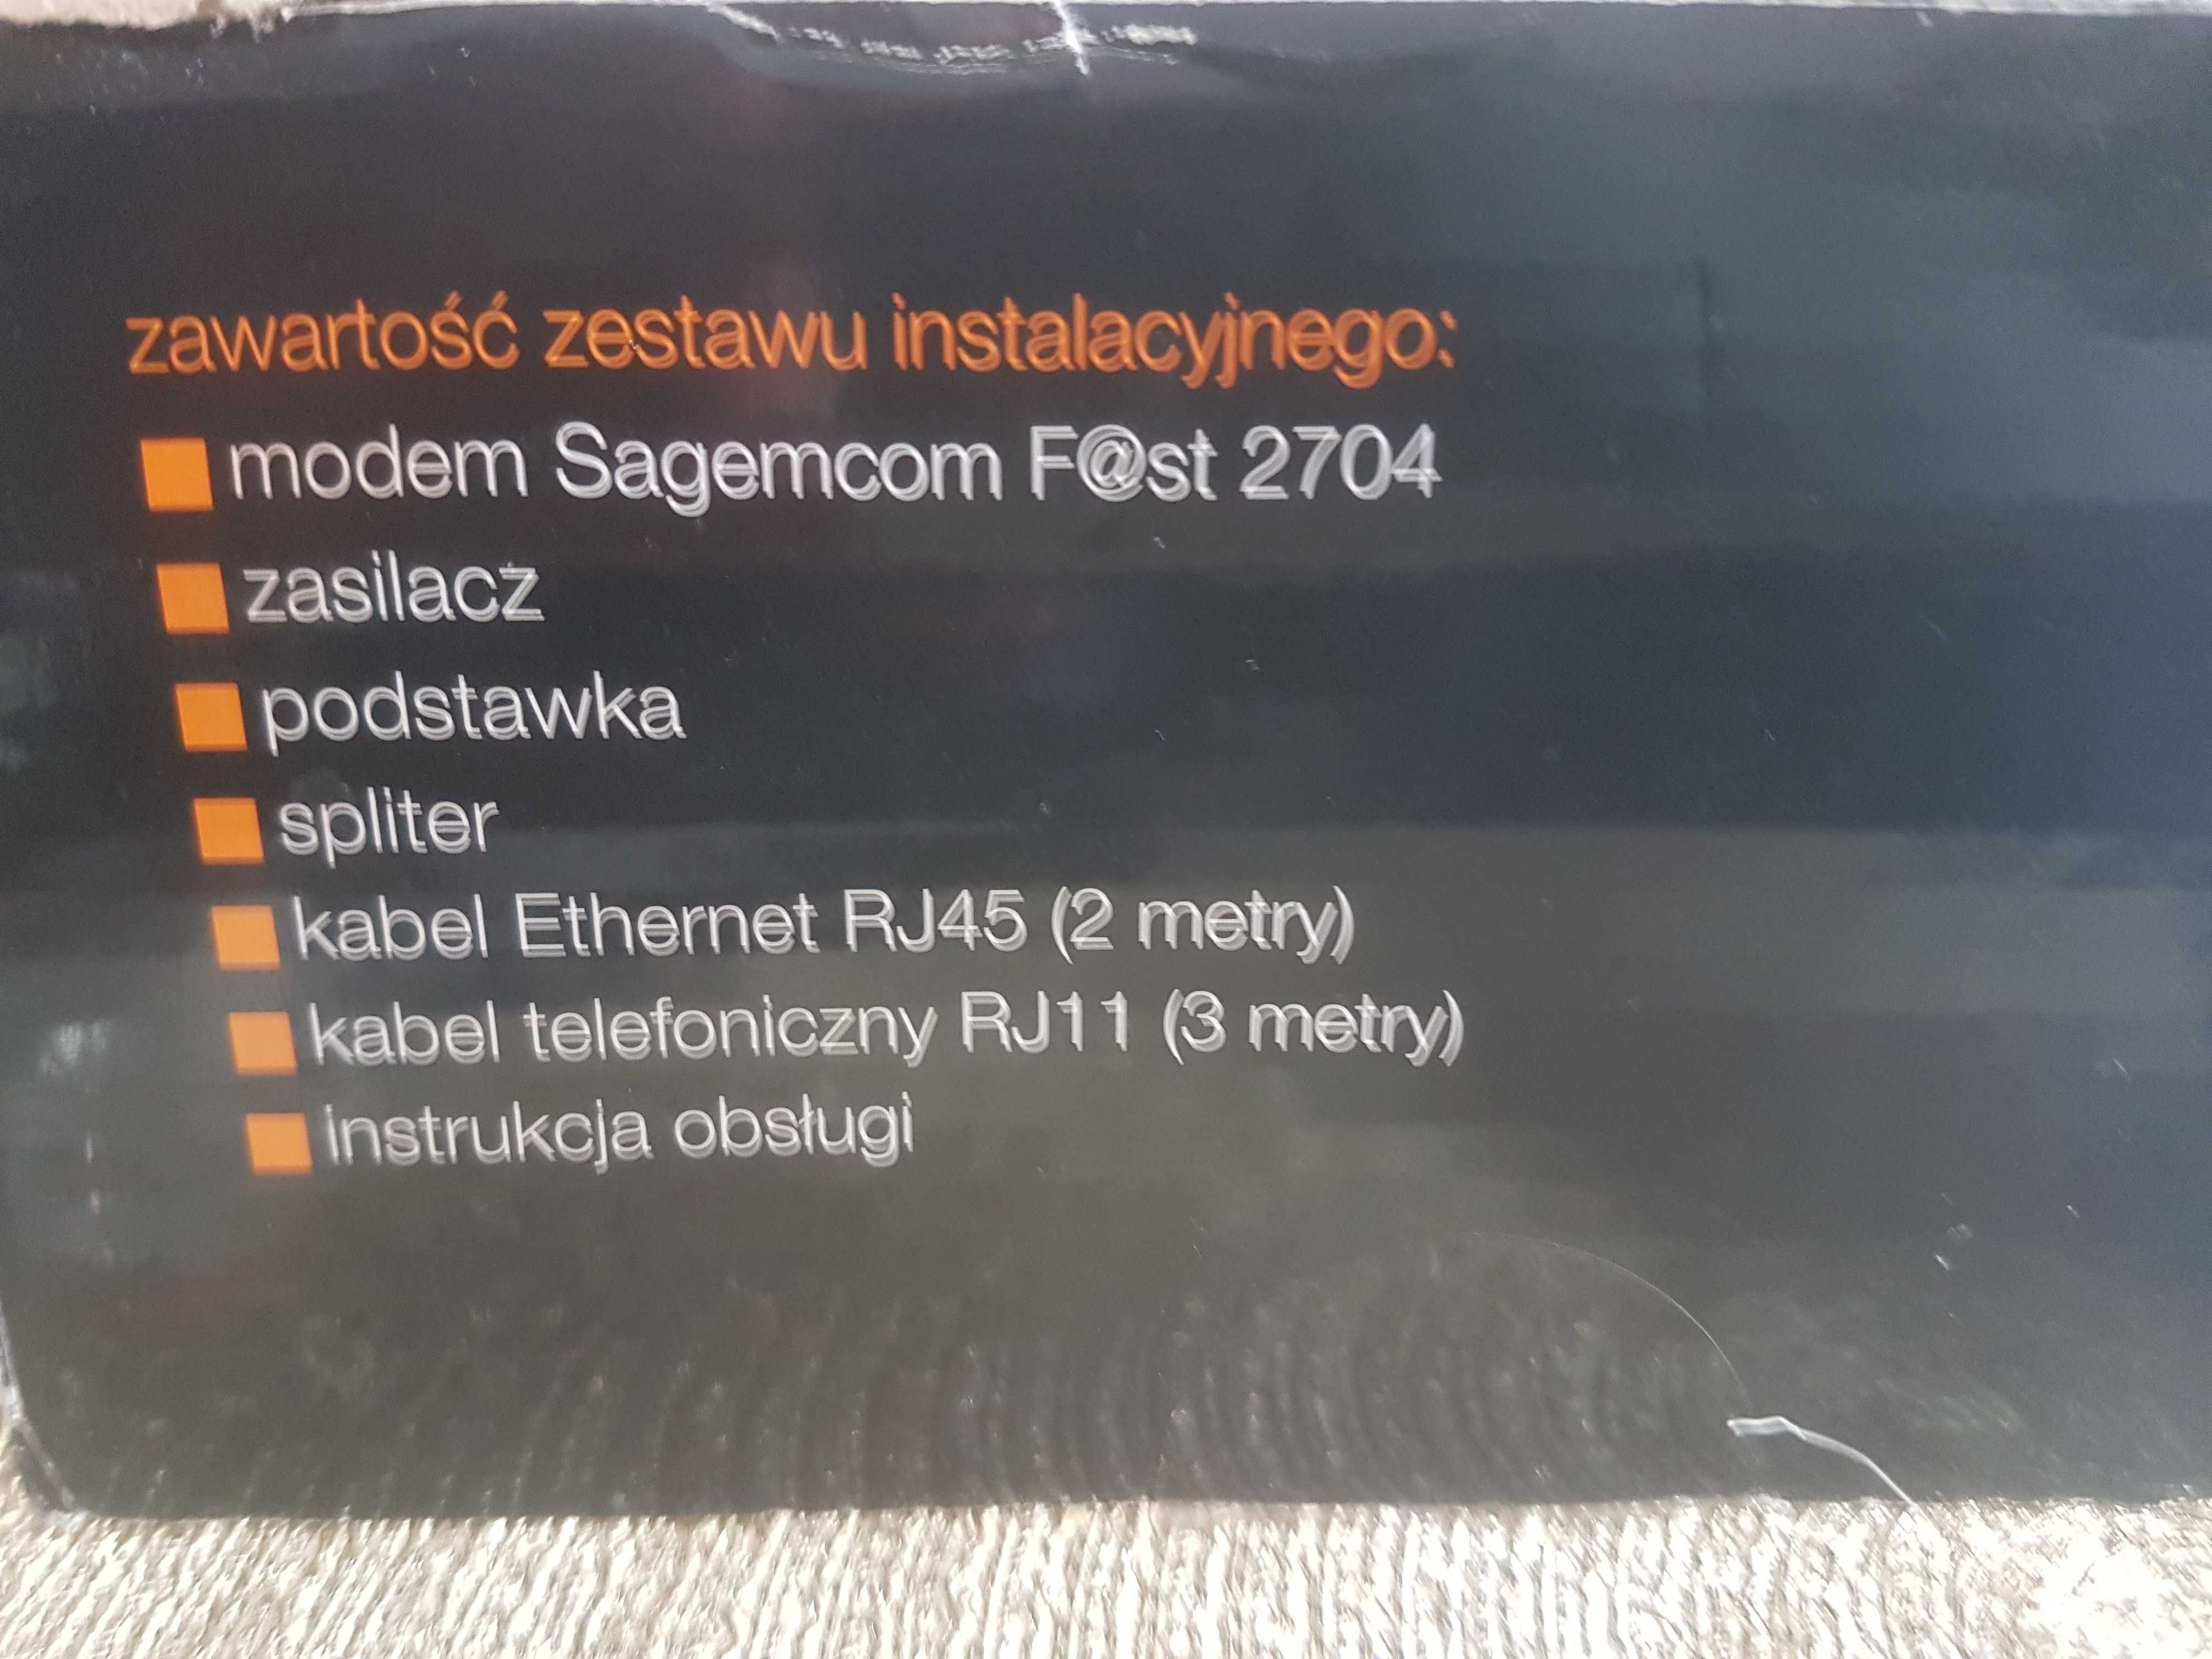 Router Sagem Fast 2704 modem malo używany możliwa wysyłka